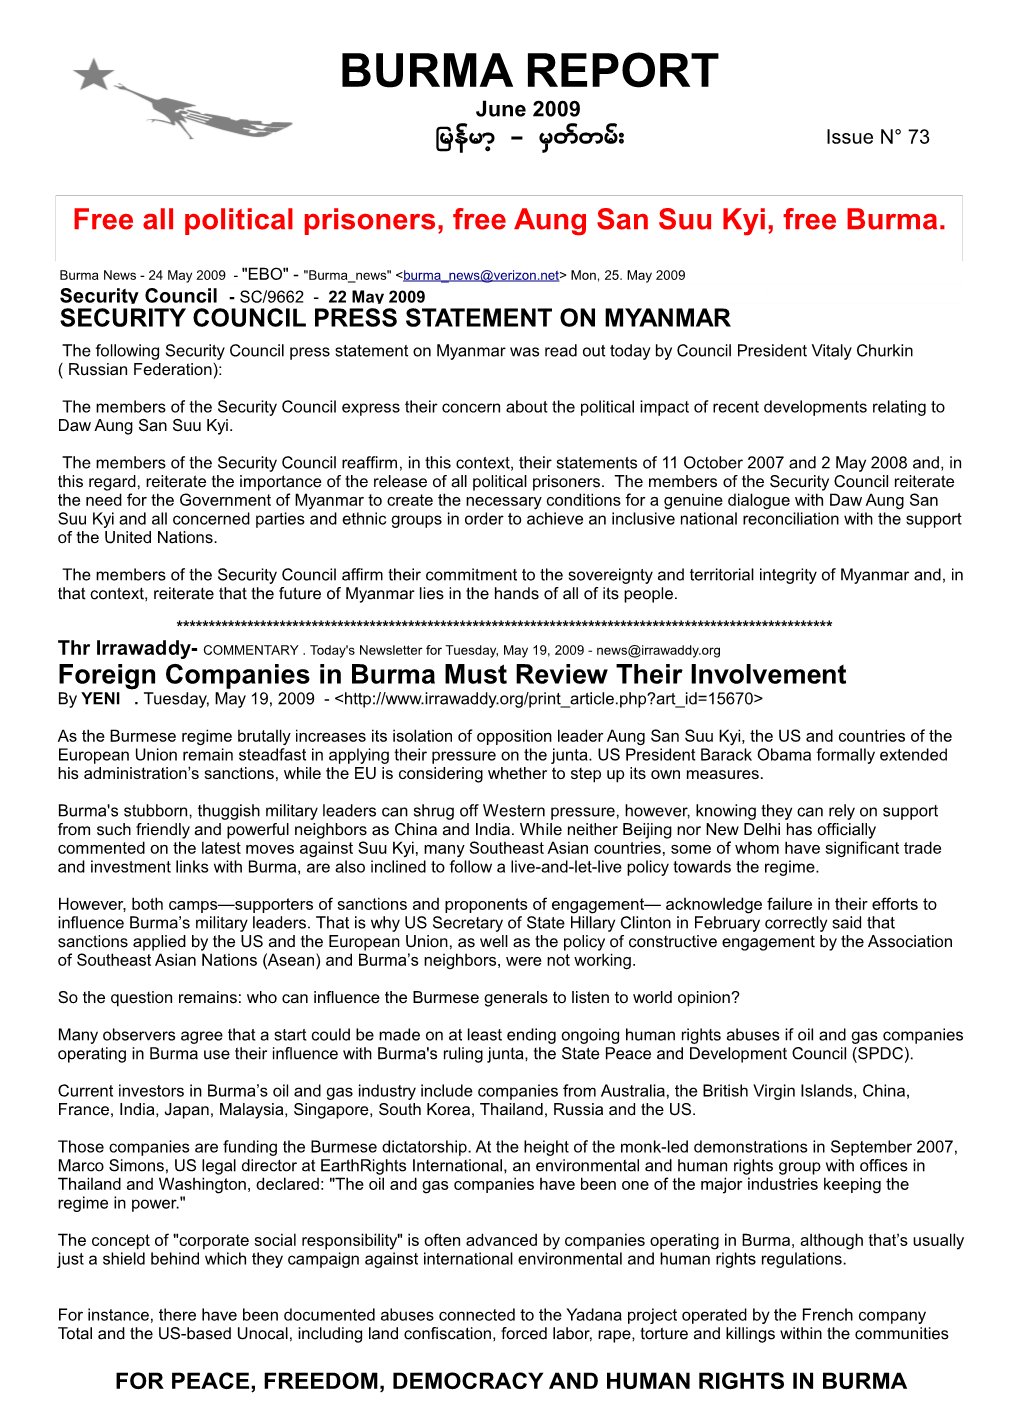 Burma Report BR-I 73